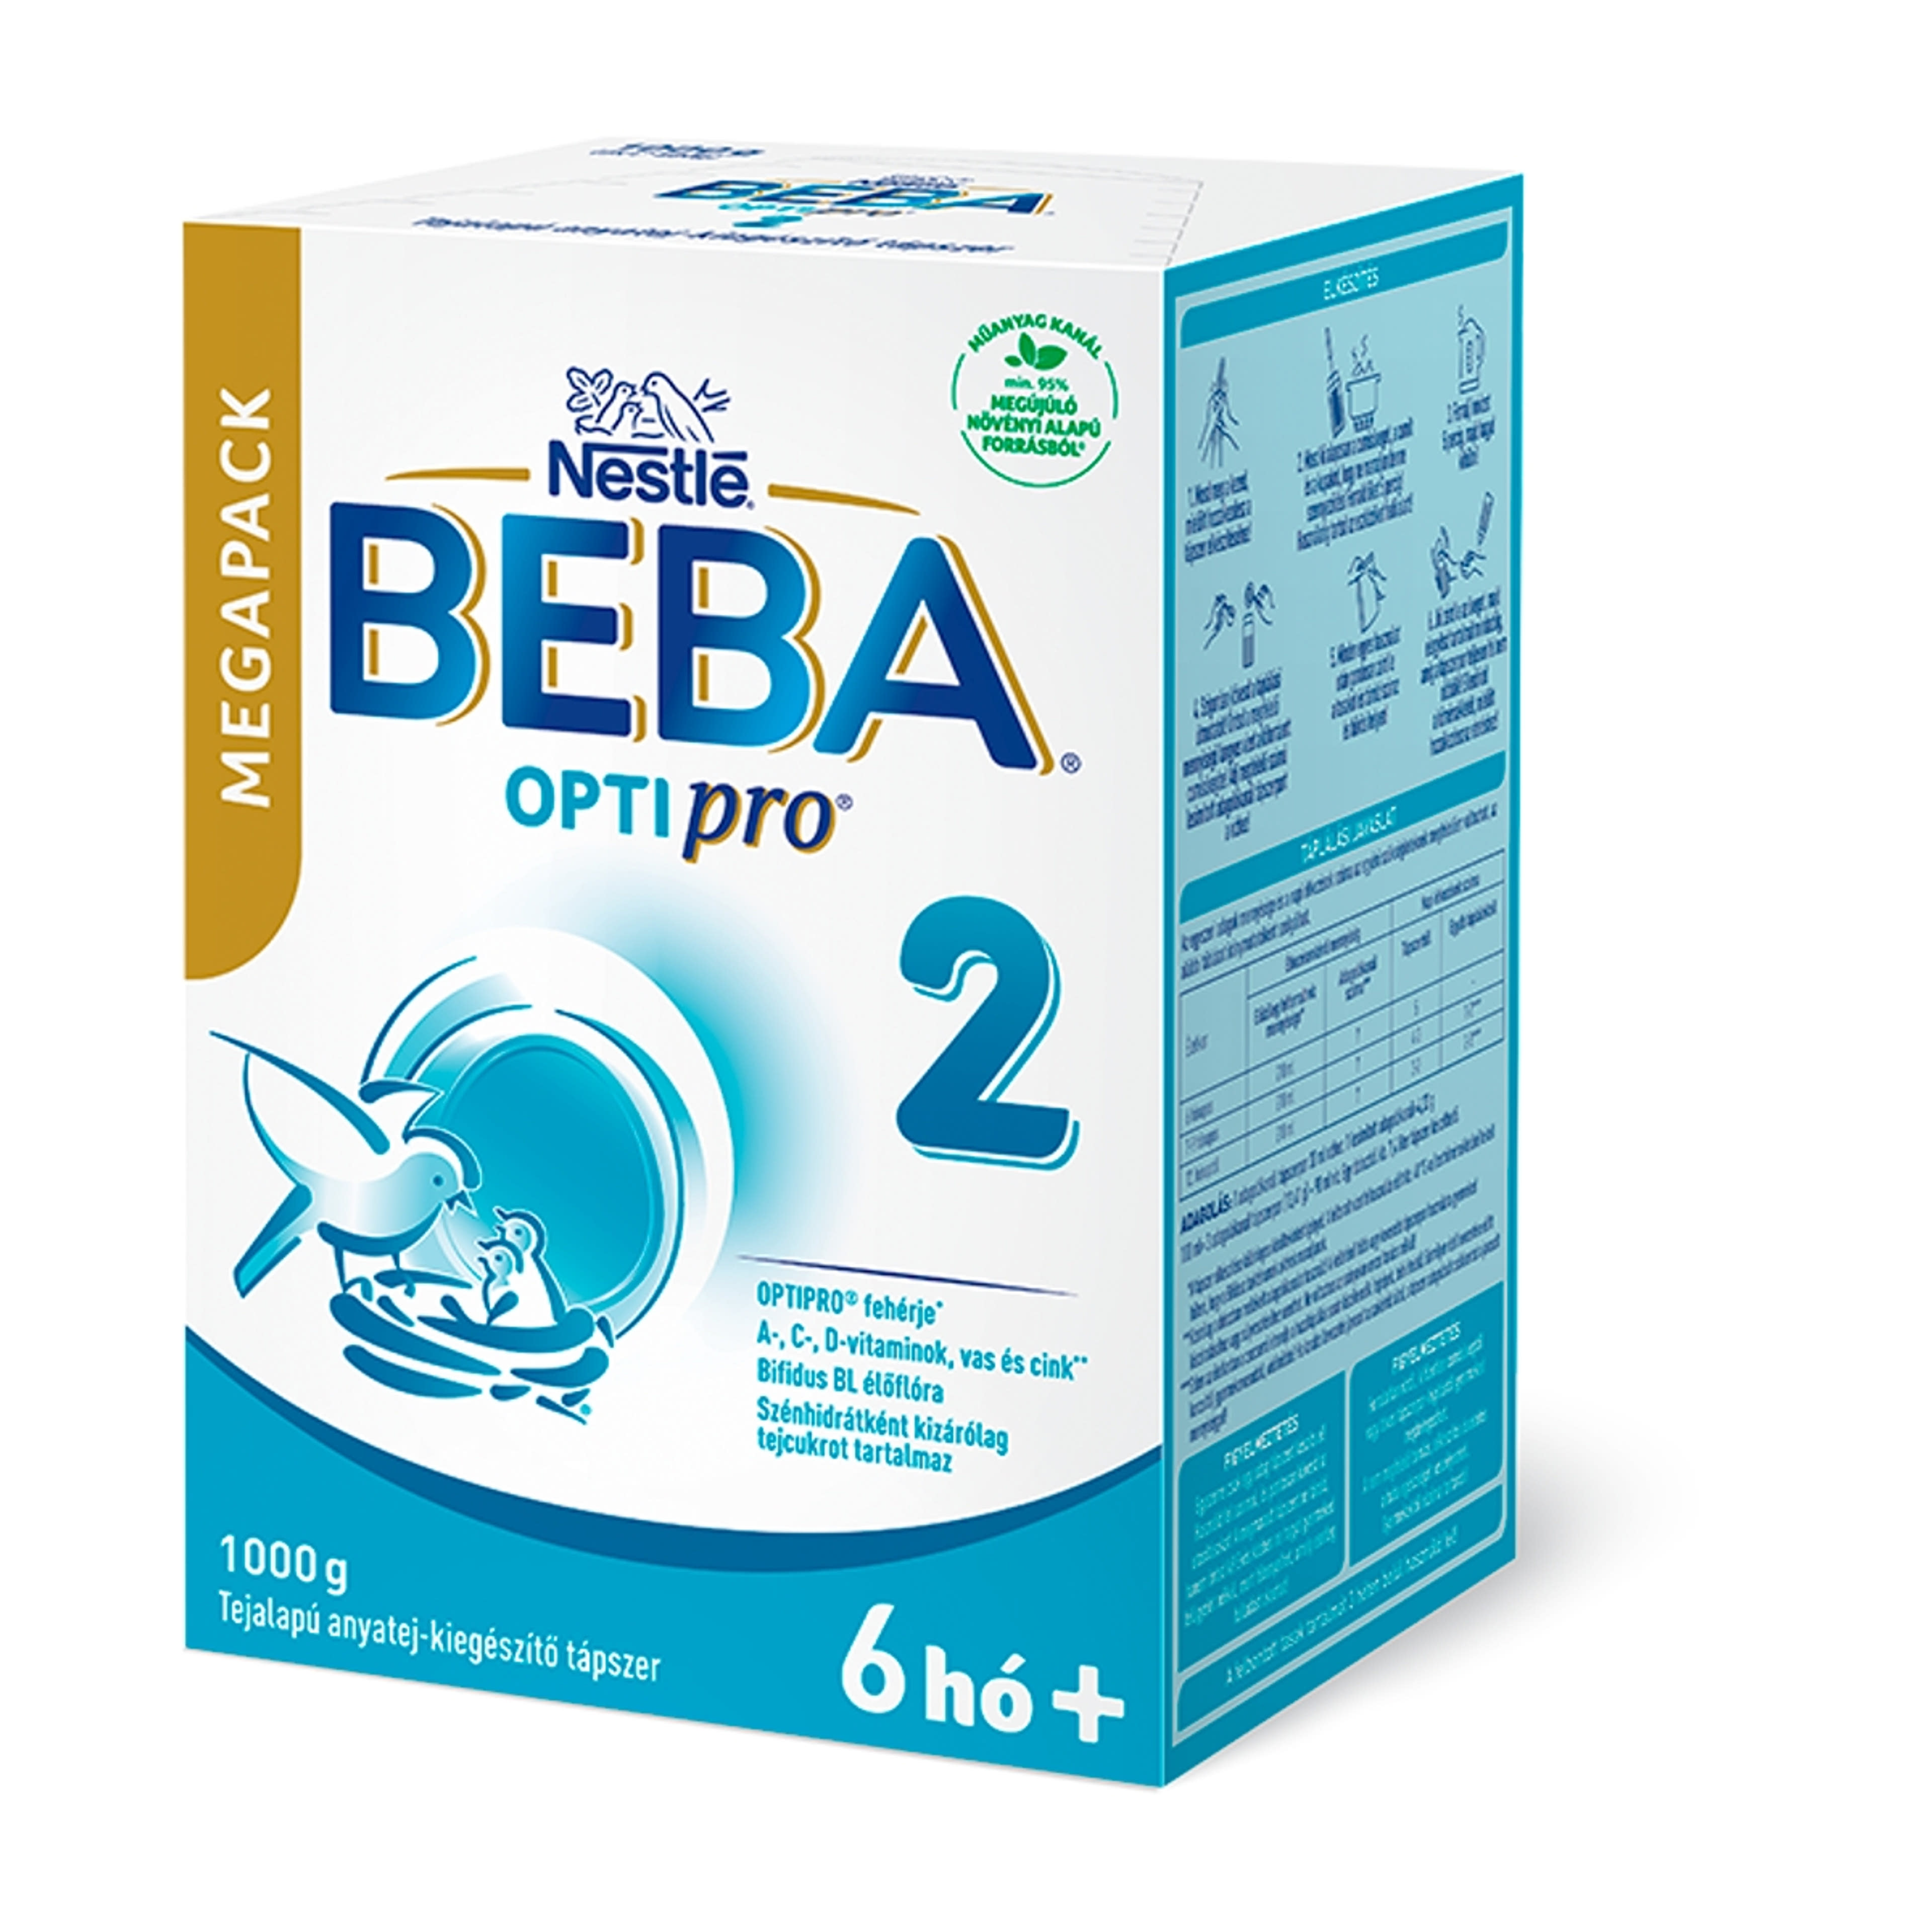 BEBA OPTIPRO 2 tejalapú anyatej-kiegészítő tápszer 6 hónapos kortól MEGAPACK - 1000 g